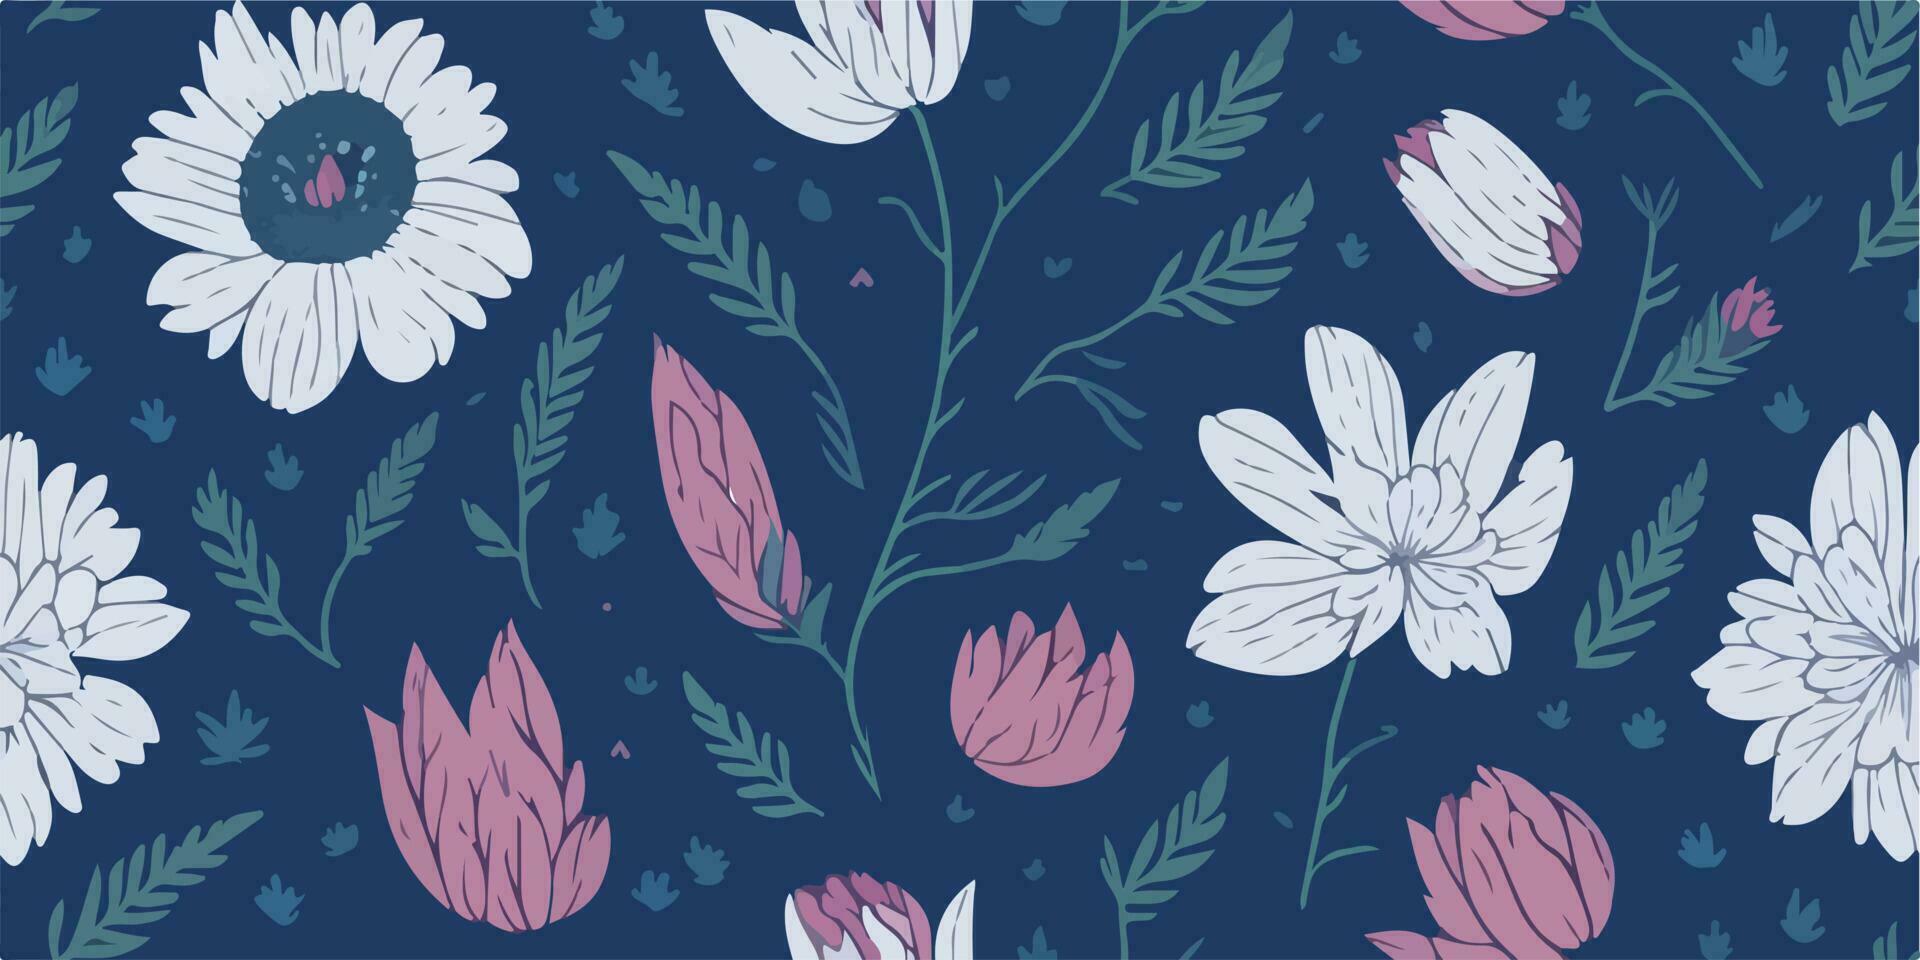 Blossom Delight, Charming Vector Illustration of Petal Patterns